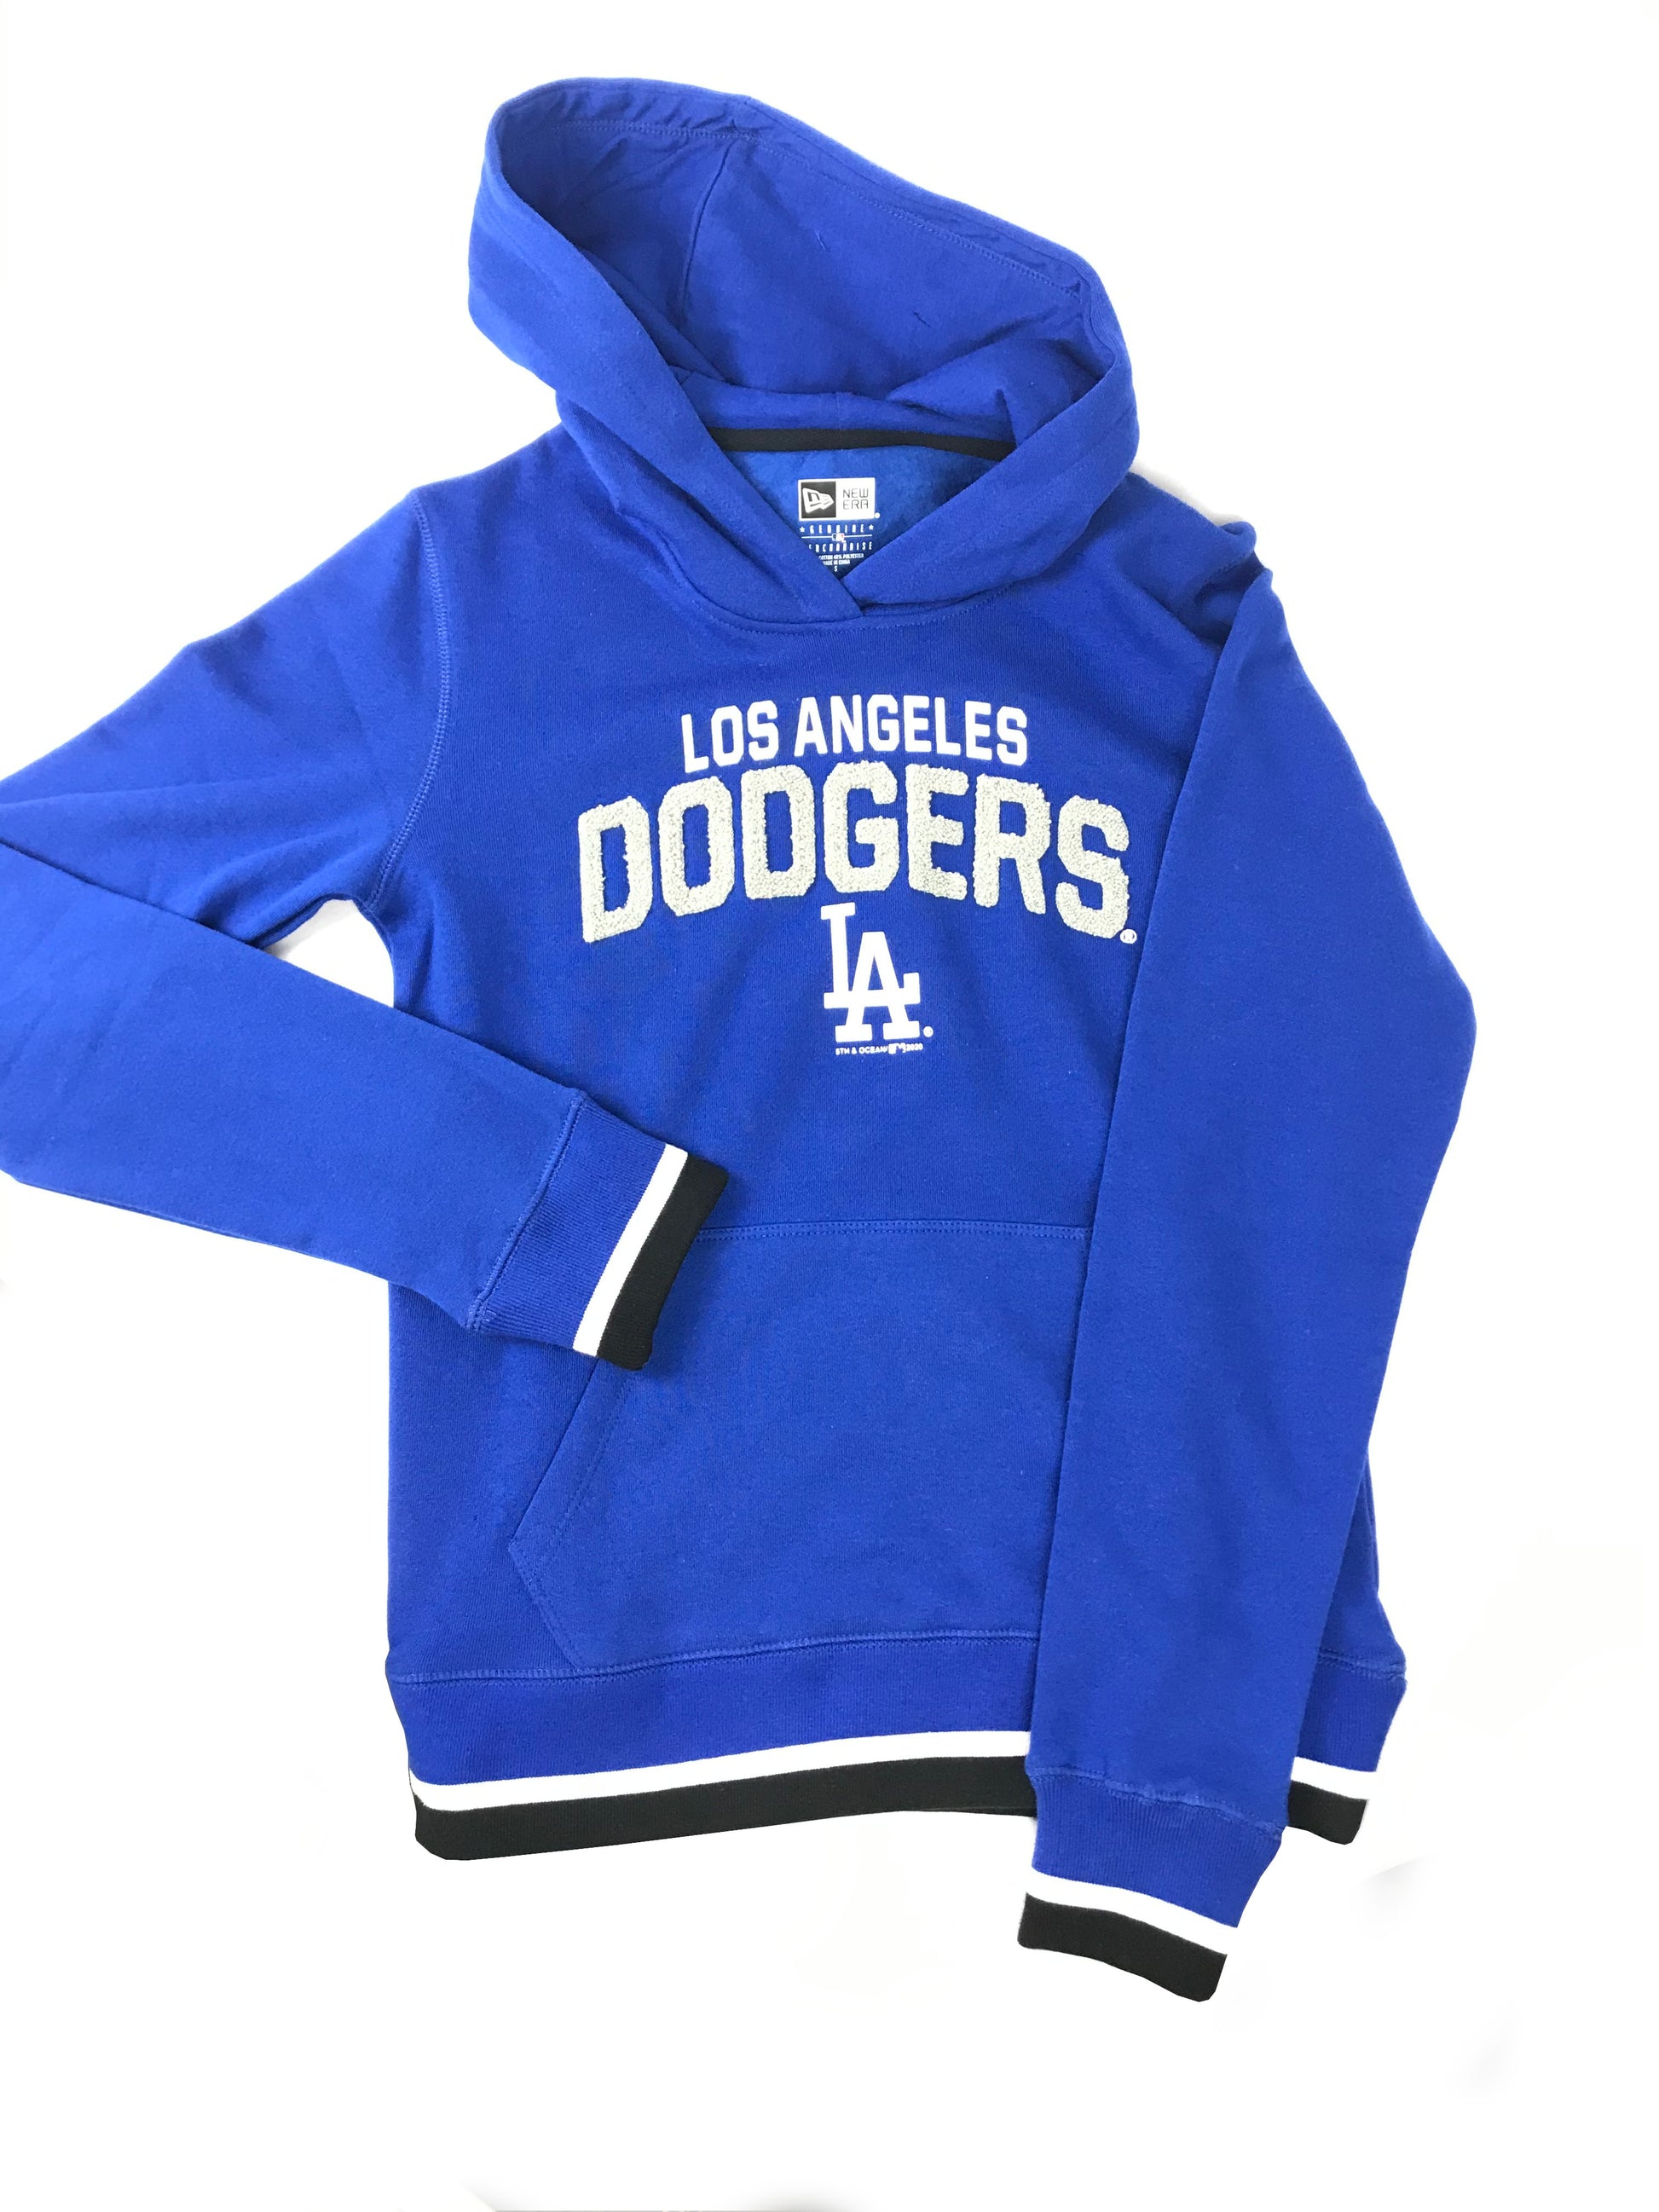 Dodgers Women Jersey – Tru Fanz Gear